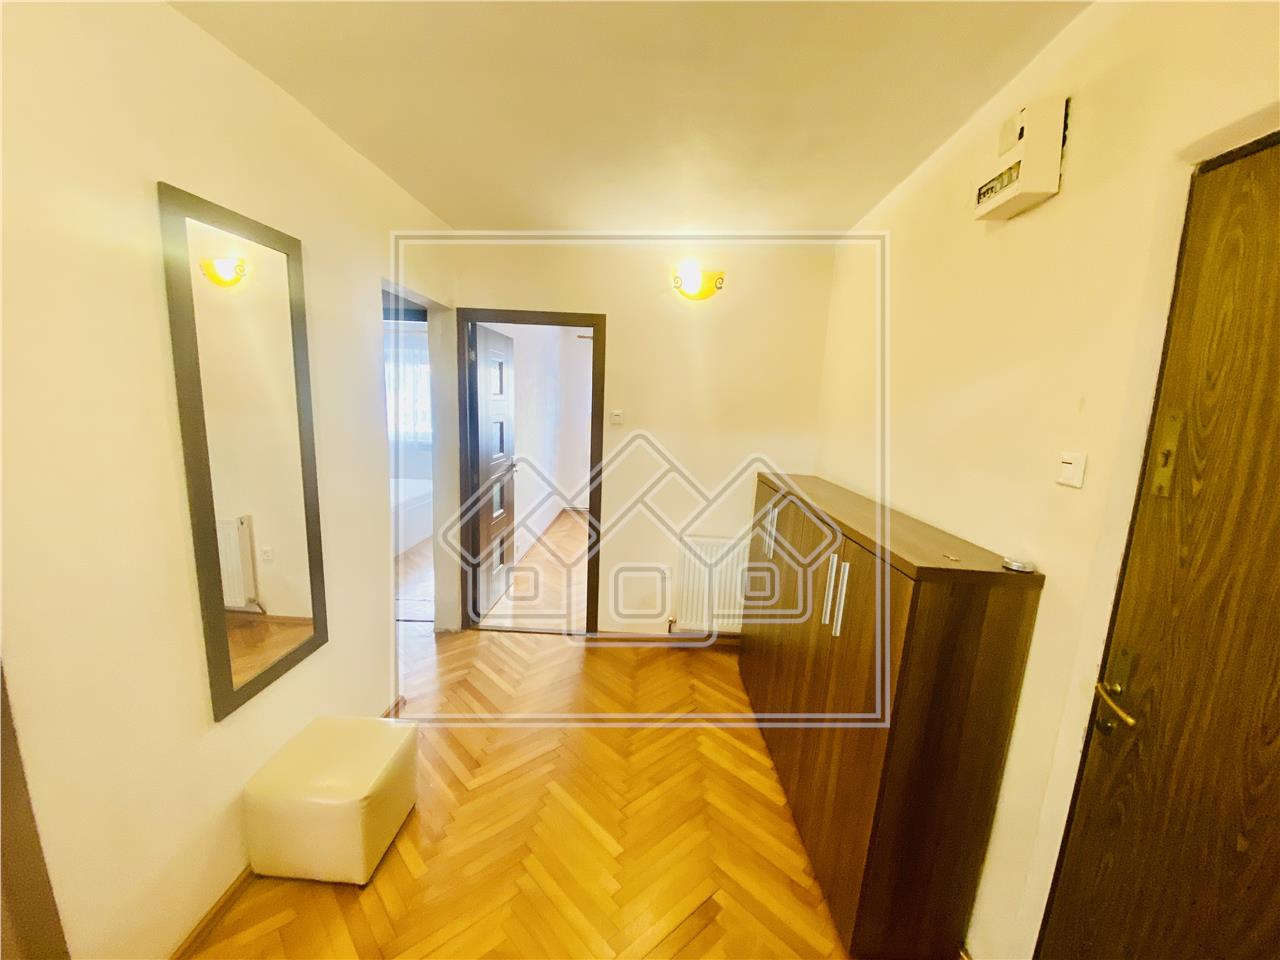 Wohnung zum Verkauf in Sibiu - 3 Zimmer, Balkon und Keller - Aurea Val